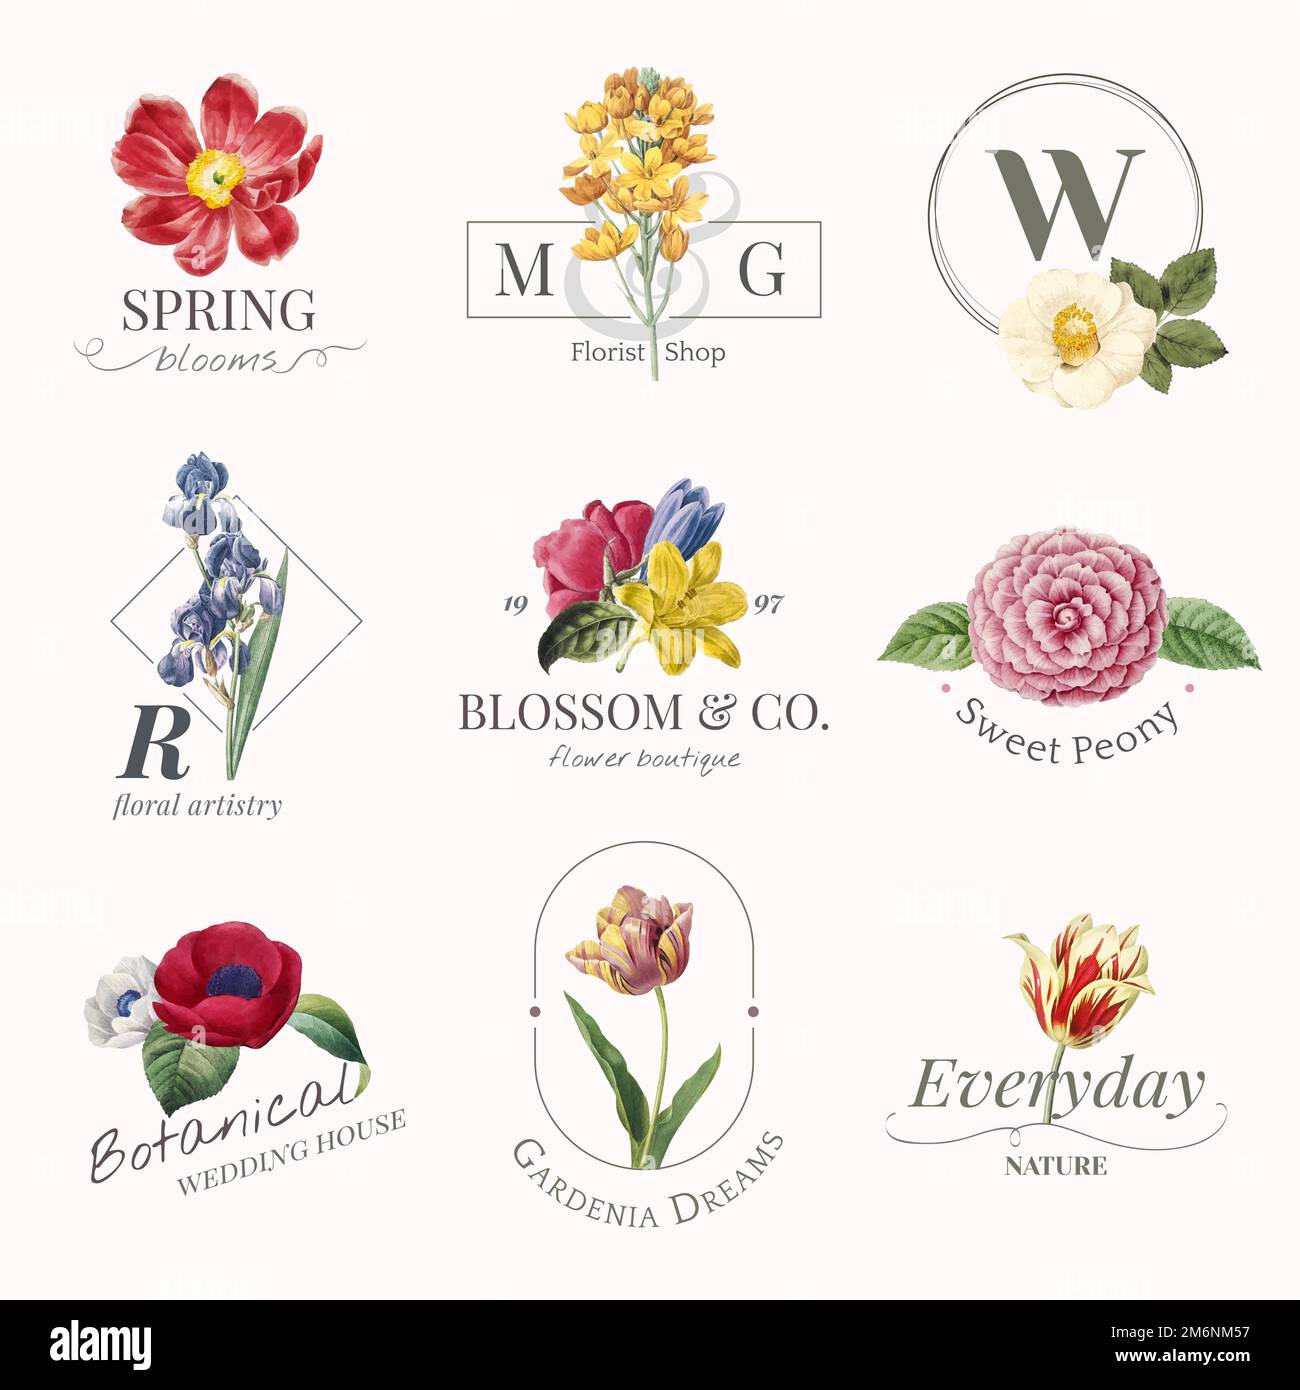 Flower boutique logo collection vector Stock Vector